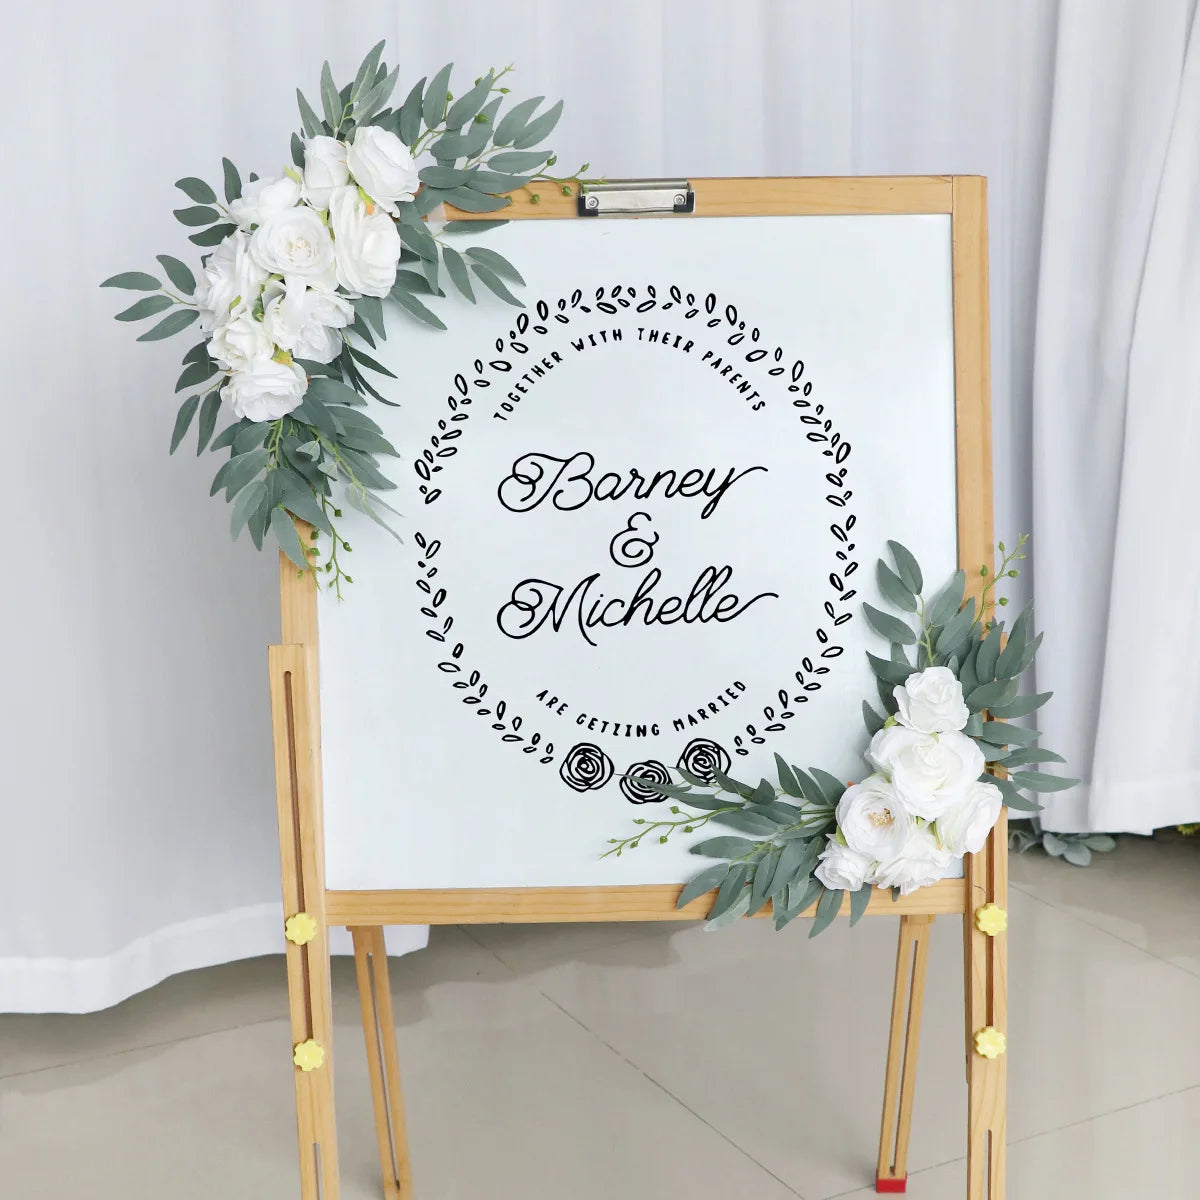 יאנו חתונה מלאכותית קשת פרחי פרחים בוהו רוז מאובק כחול אוקליפטוס וילונות זר לקישוטים לחתונה שלט ברוך הבא